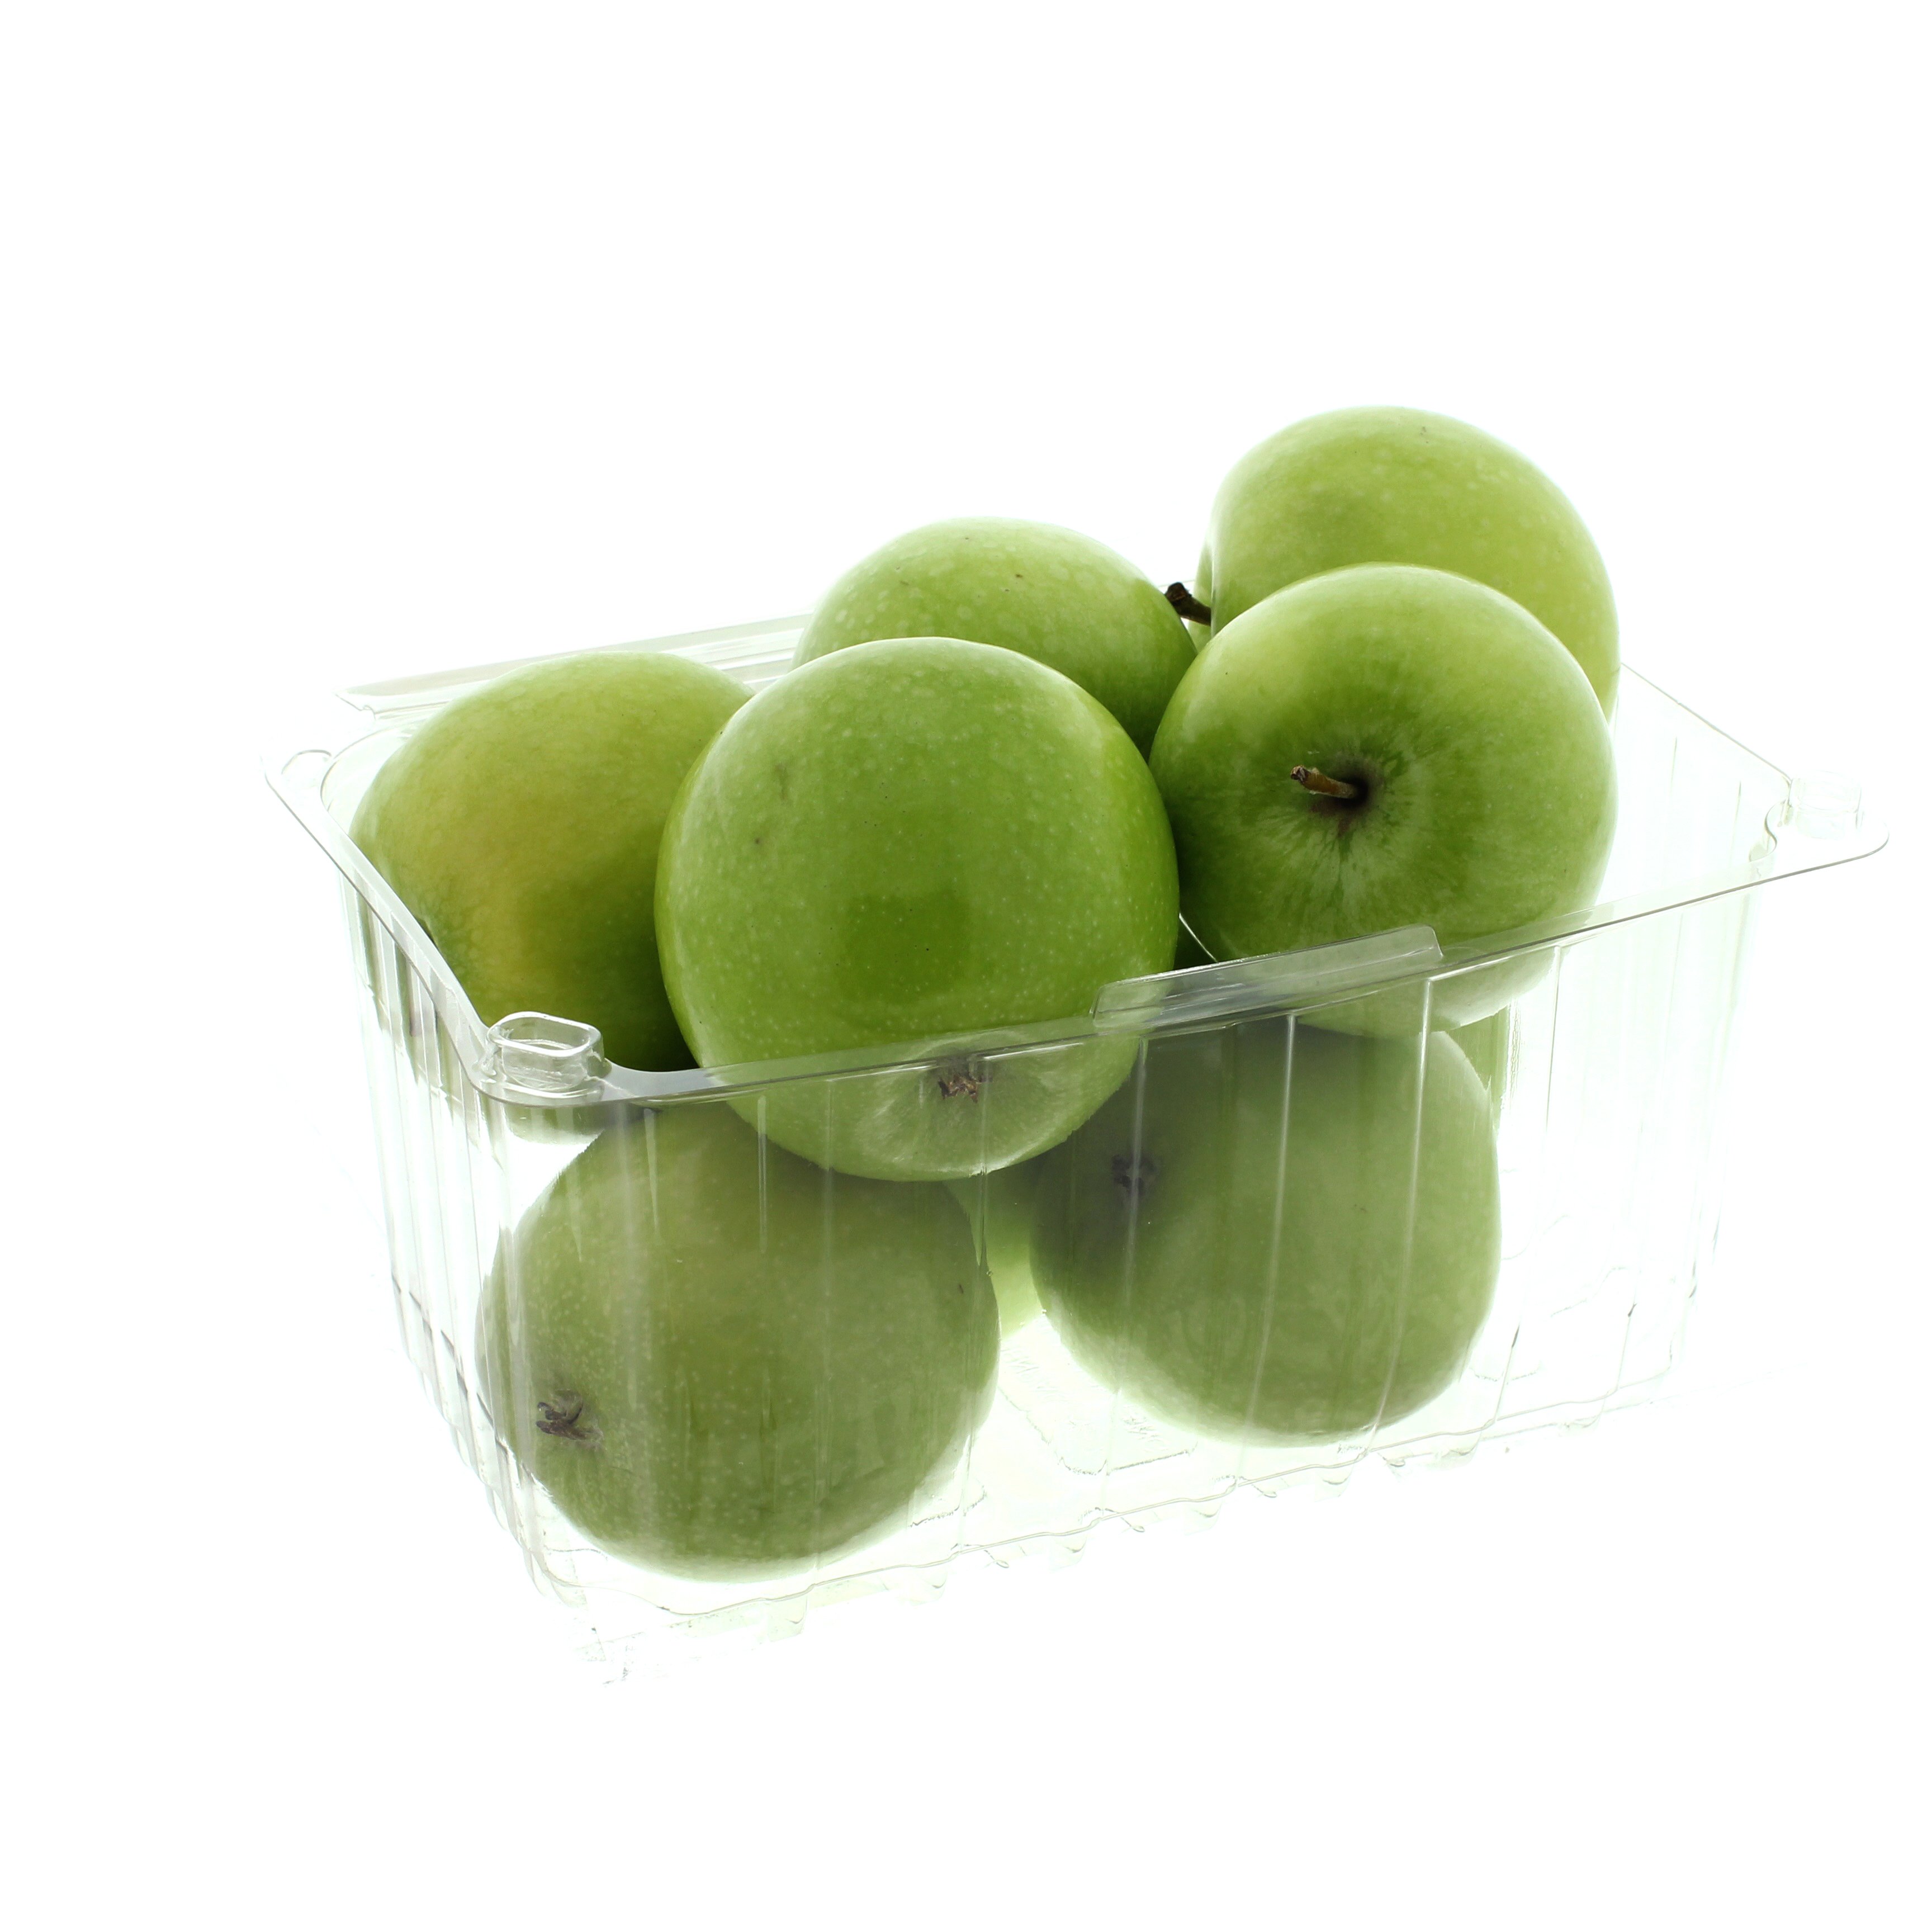 mini green apples